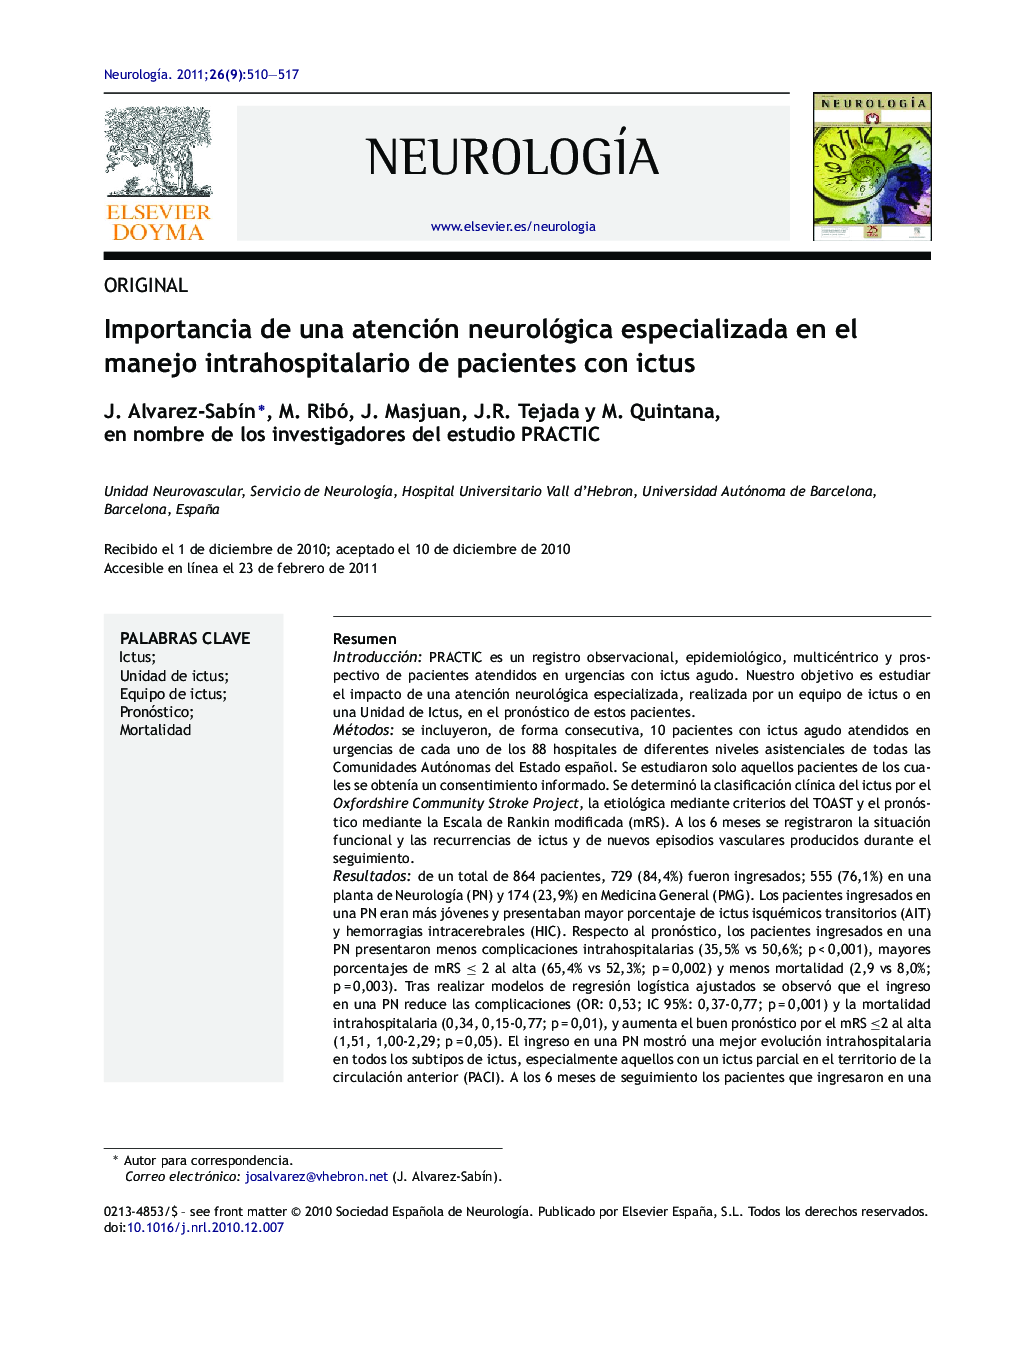 Importancia de una atención neurológica especializada en el manejo intrahospitalario de pacientes con ictus